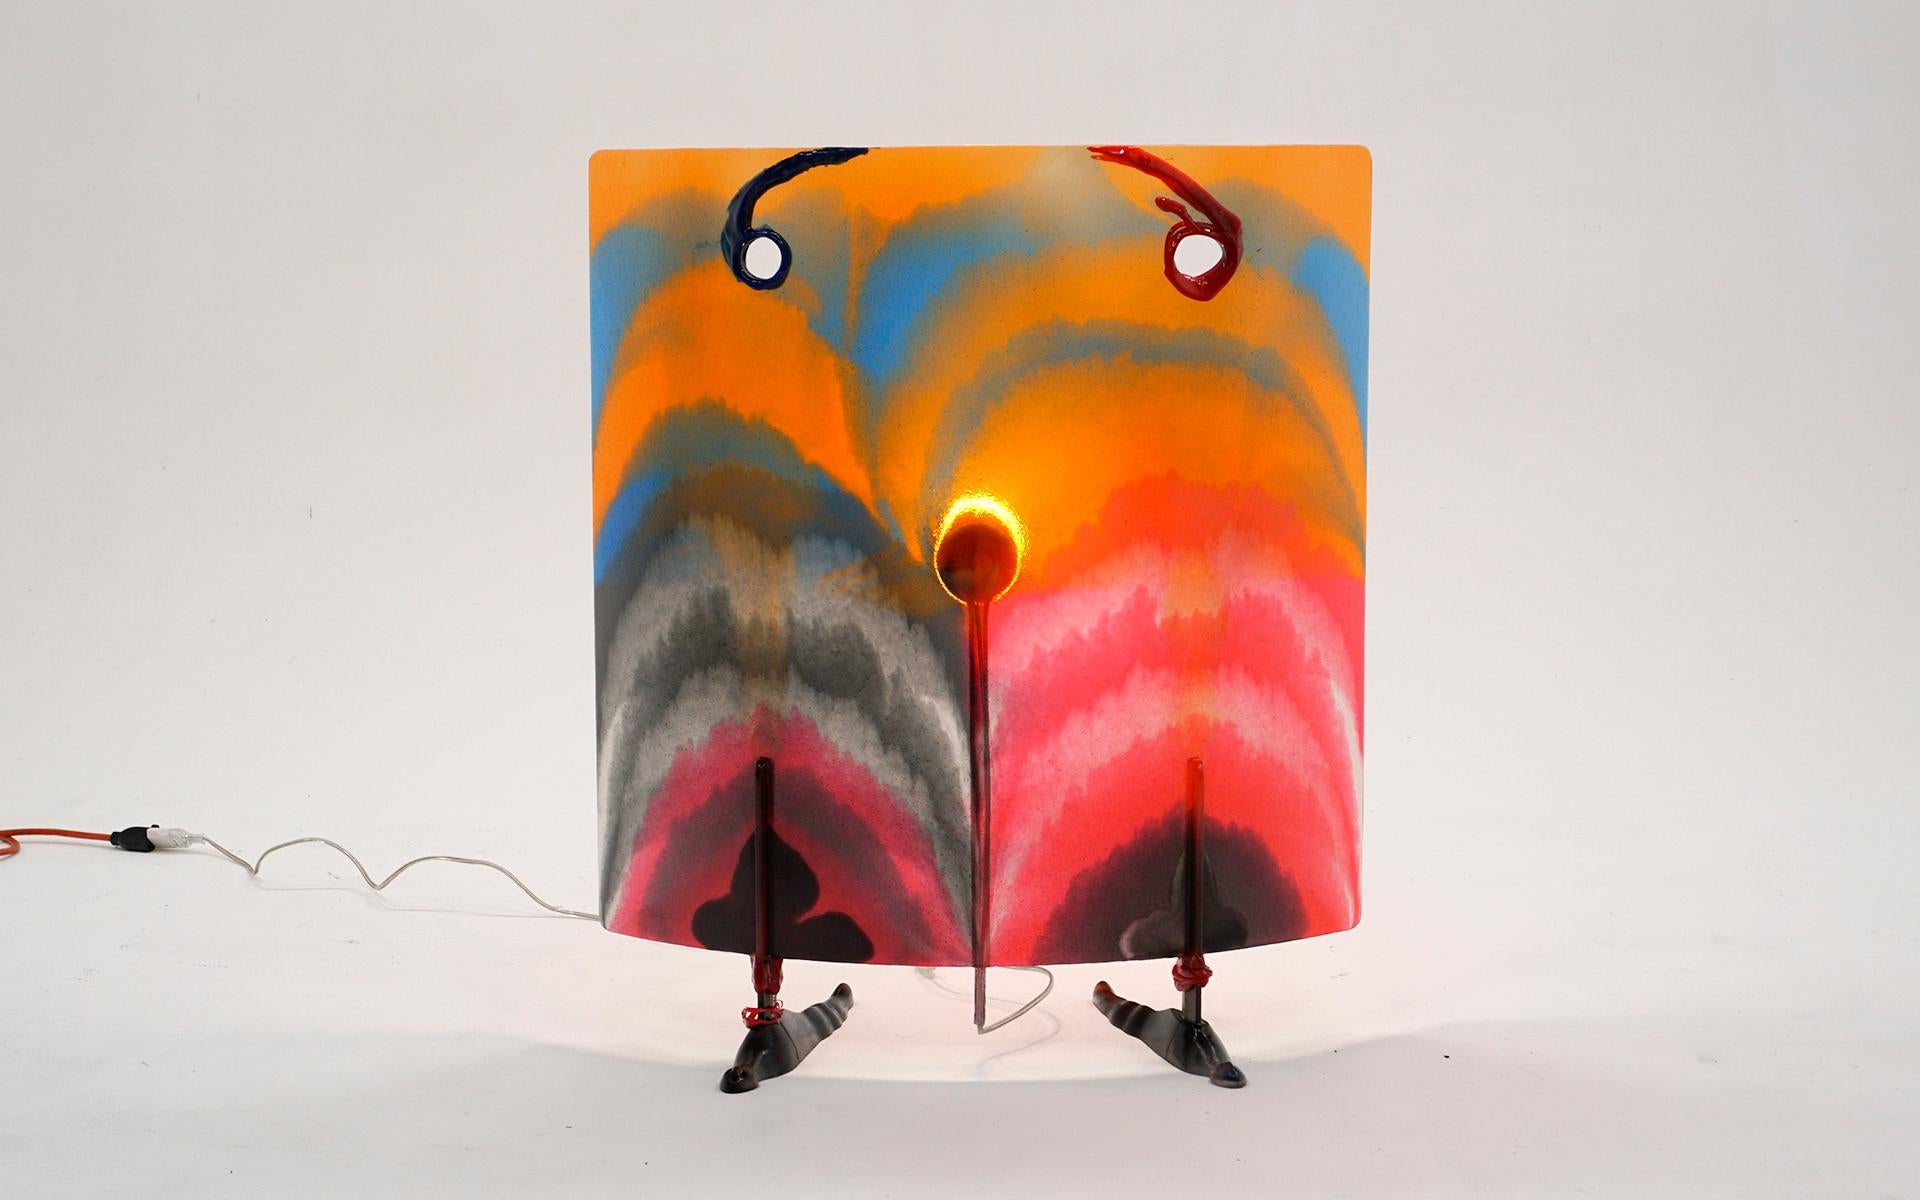 Lampe à poser Chador multicolore de la série Open Sky conçue par Gaetano Pesce.  Fabriqué en résine, très robuste. La série Open Sky a été produite en édition très limitée pour Fish Design à New York.  Fonctionne parfaitement et l'état est